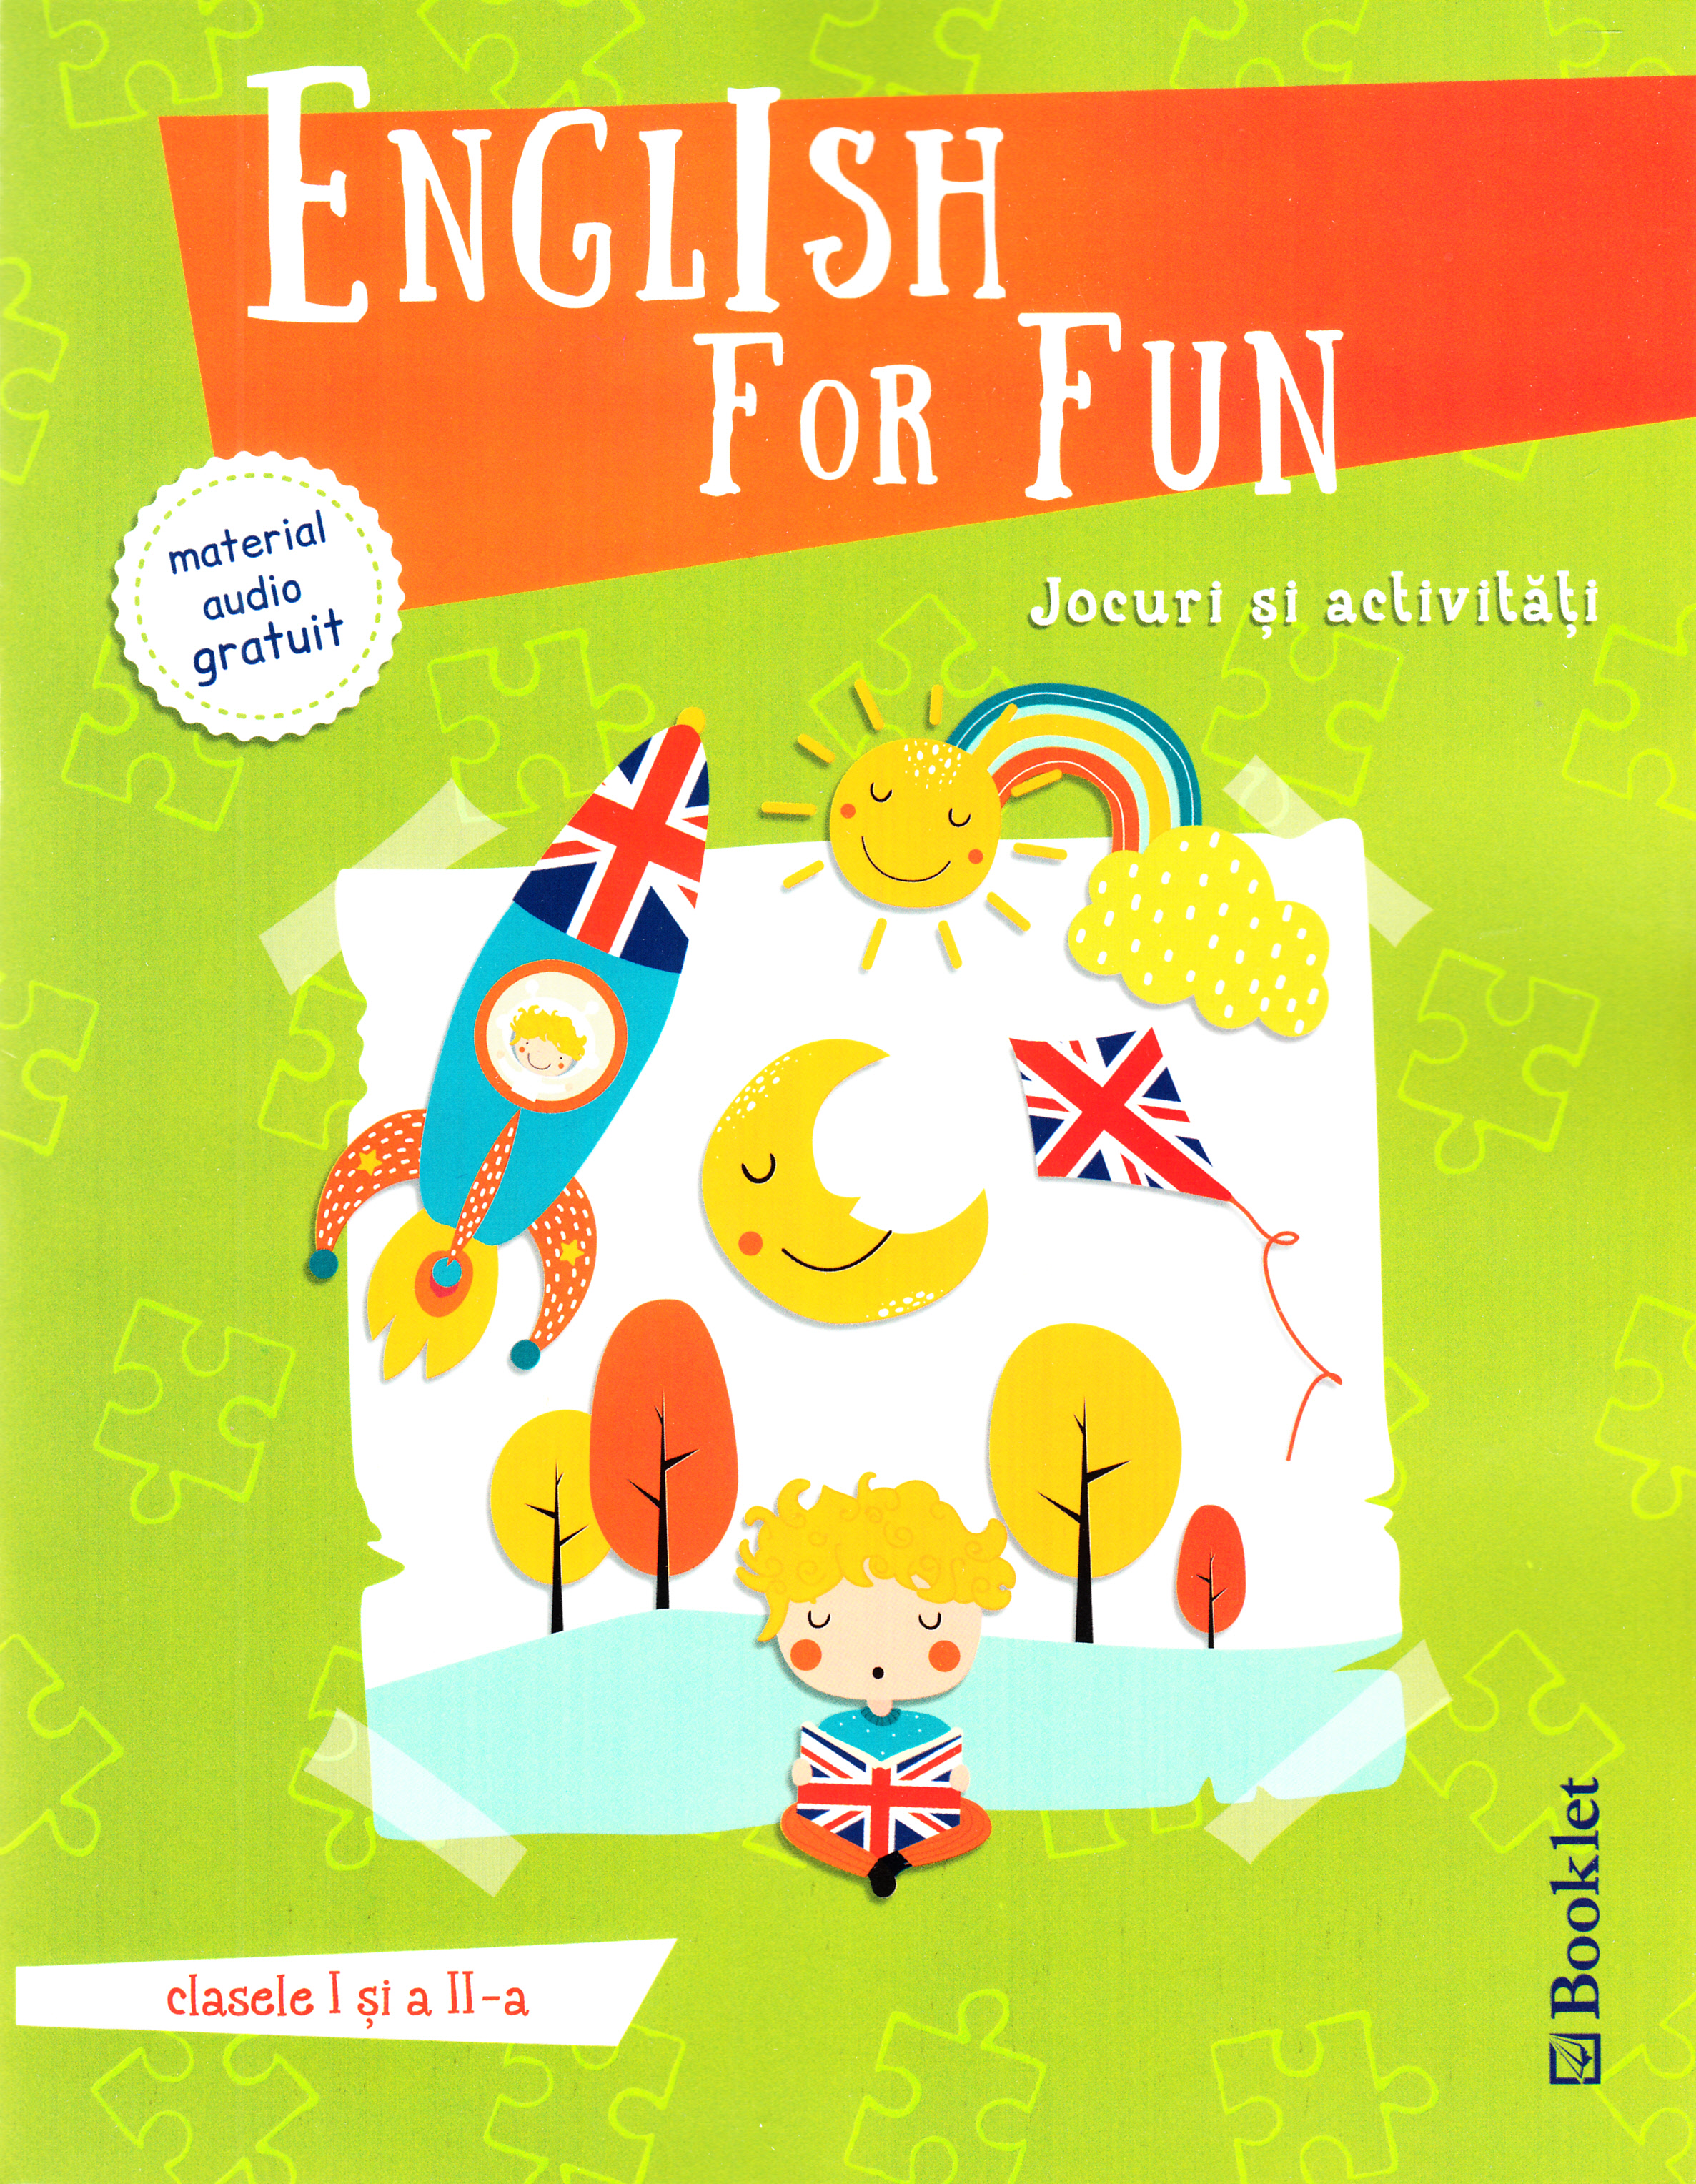 English for Fun. Jocuri si activitati - Clasele 1 si 2